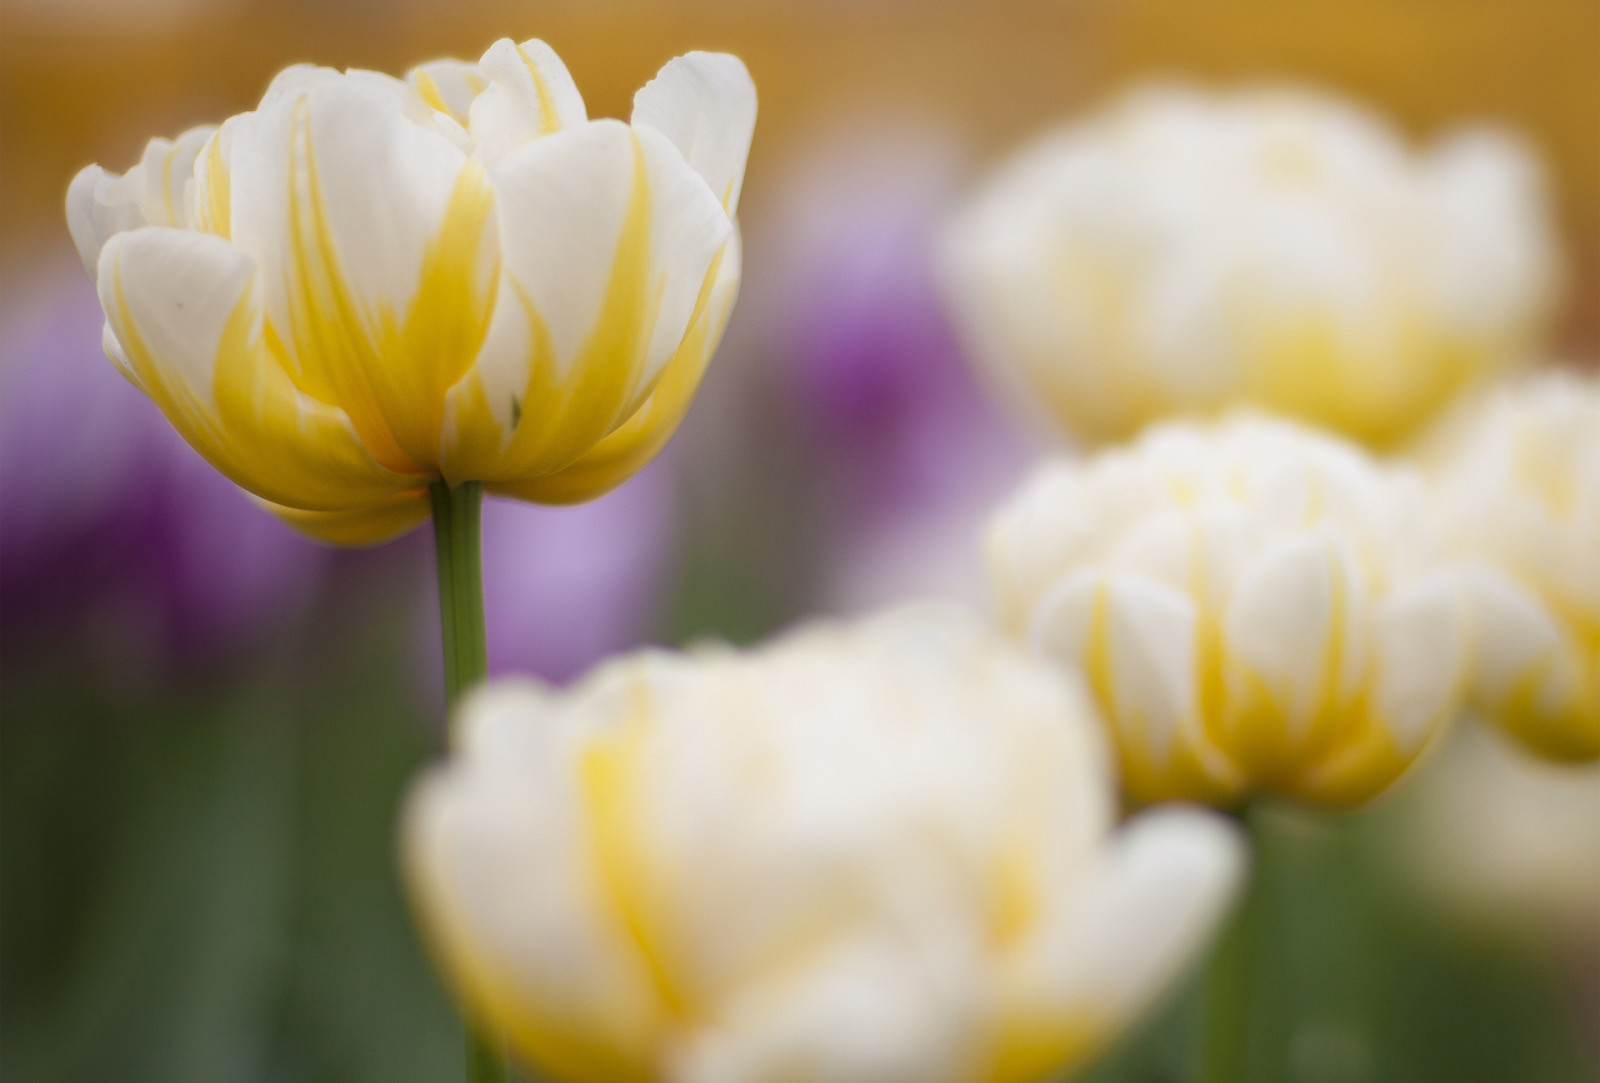 mùa xuân, bông hoa, tiêu điểm, Hoa tulip, vàng trắng